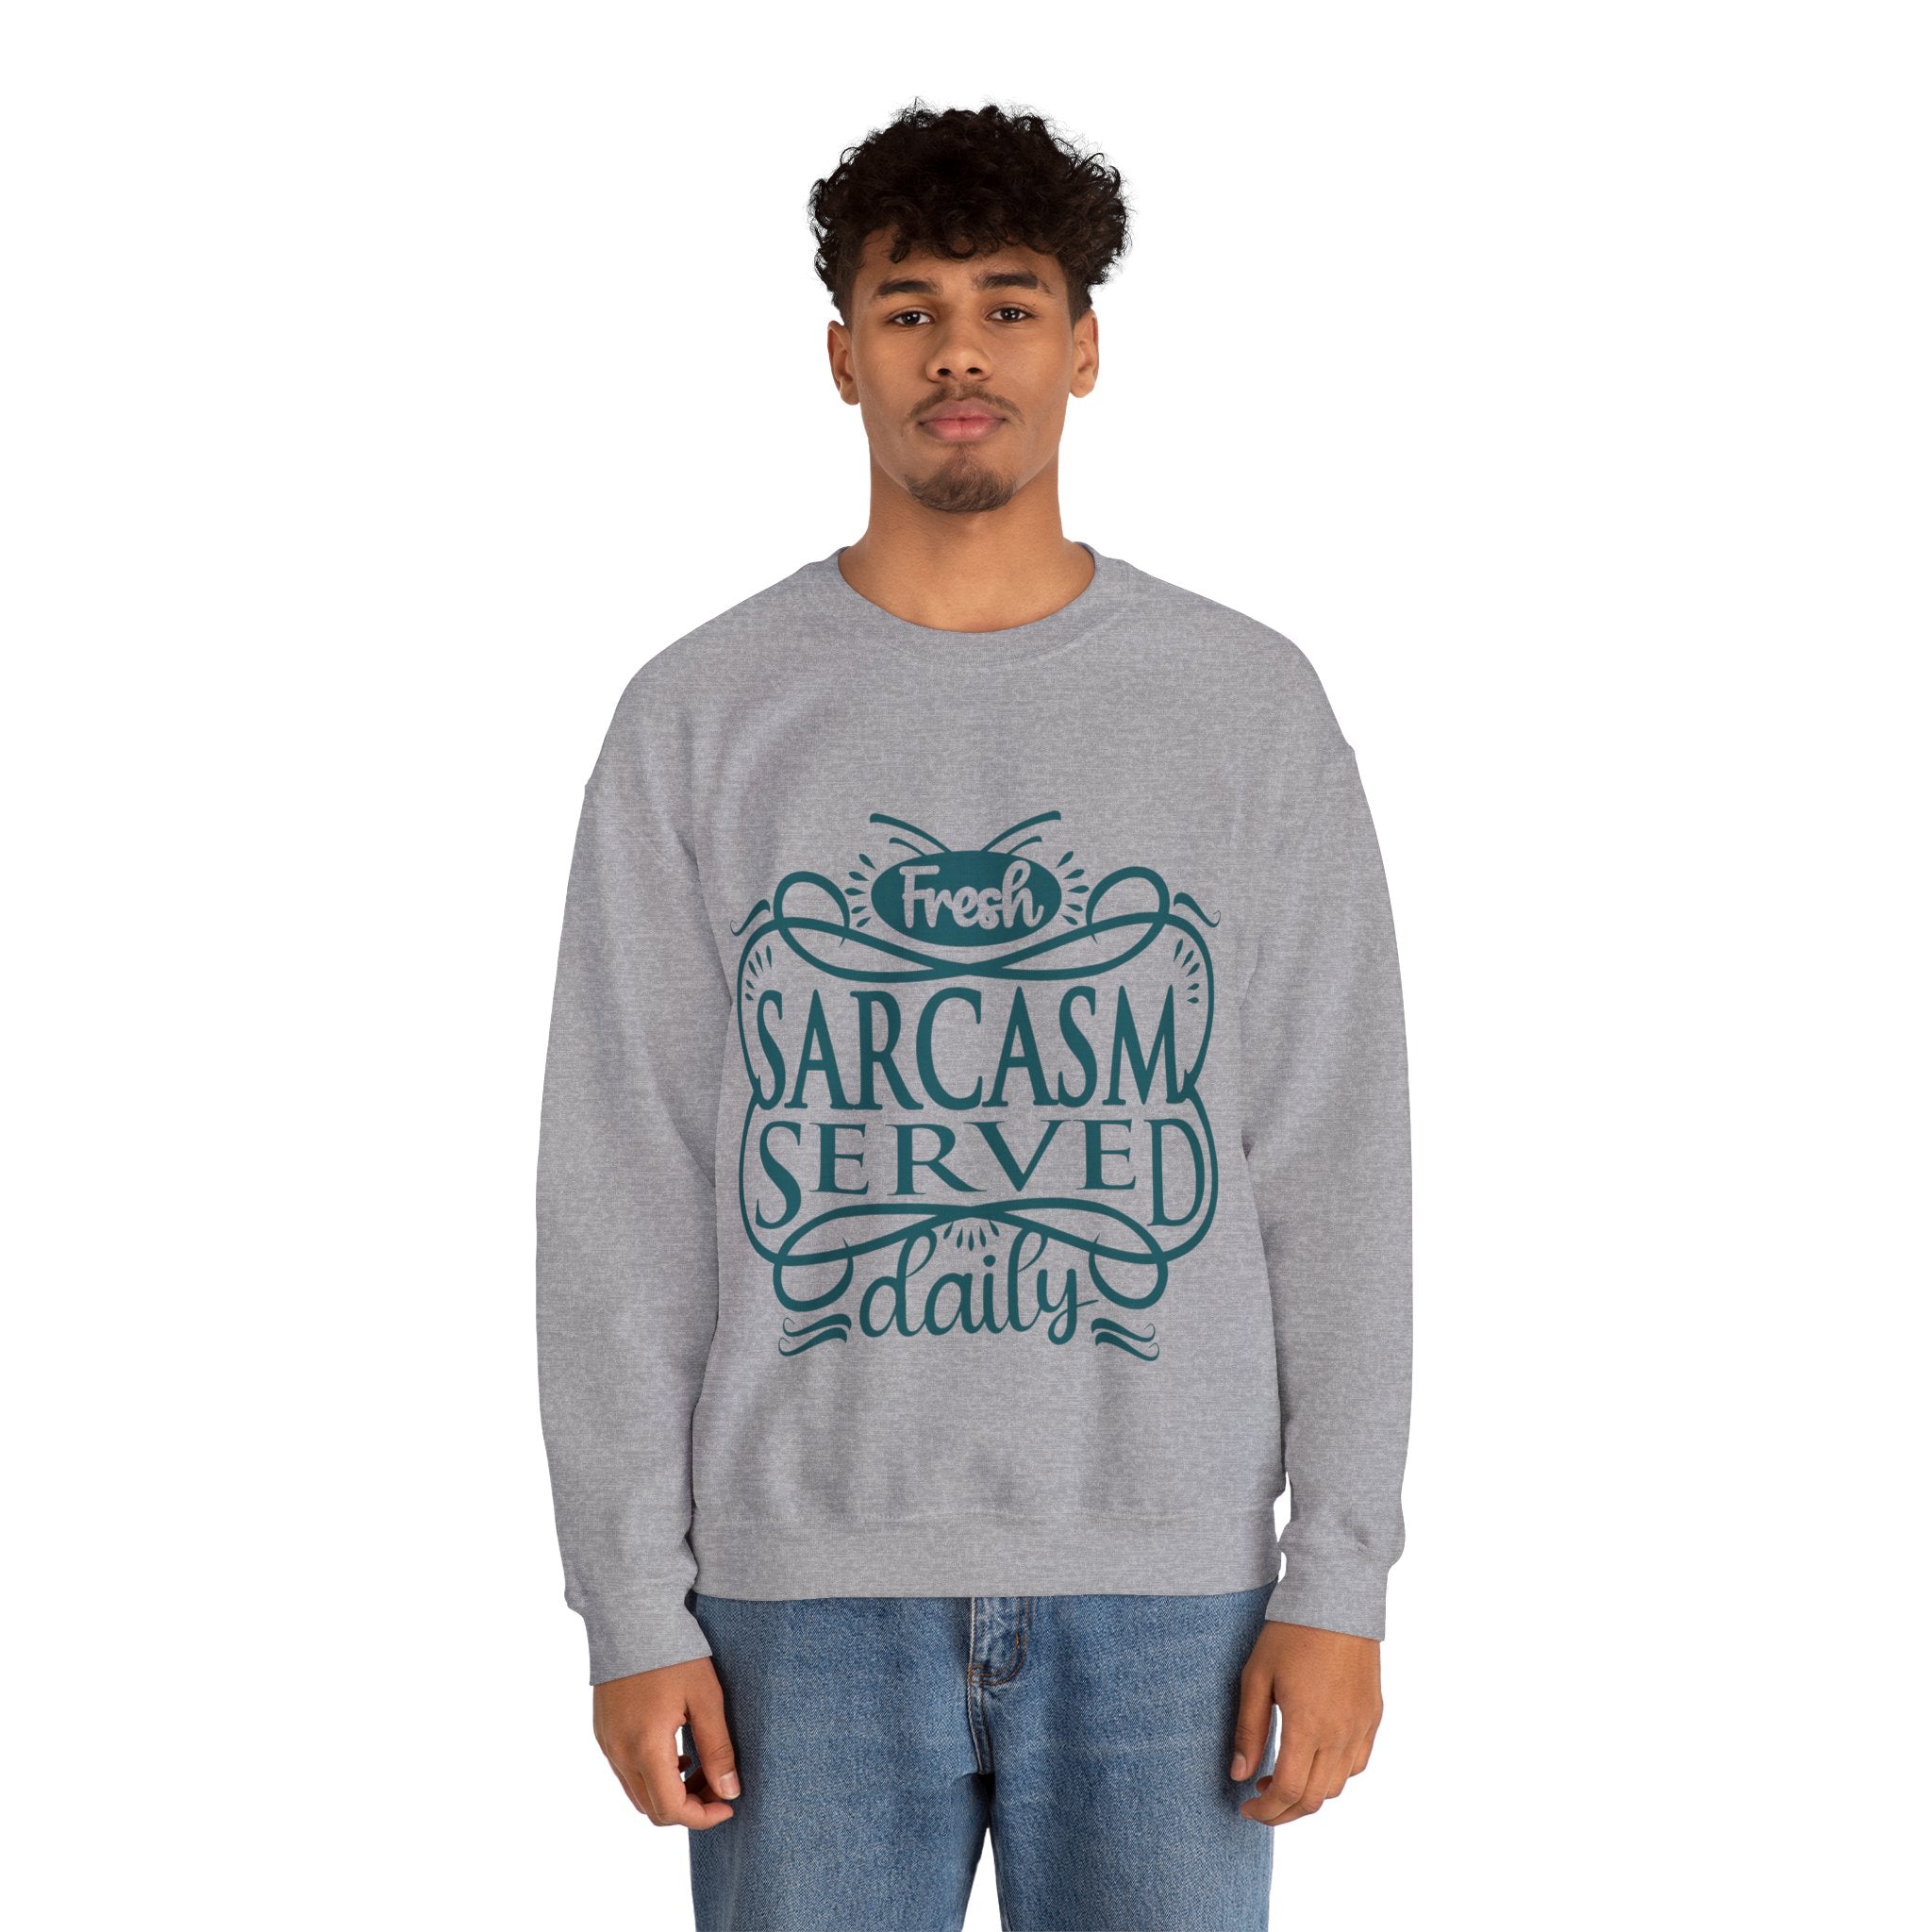 Sarcastic Sweatshirt for men